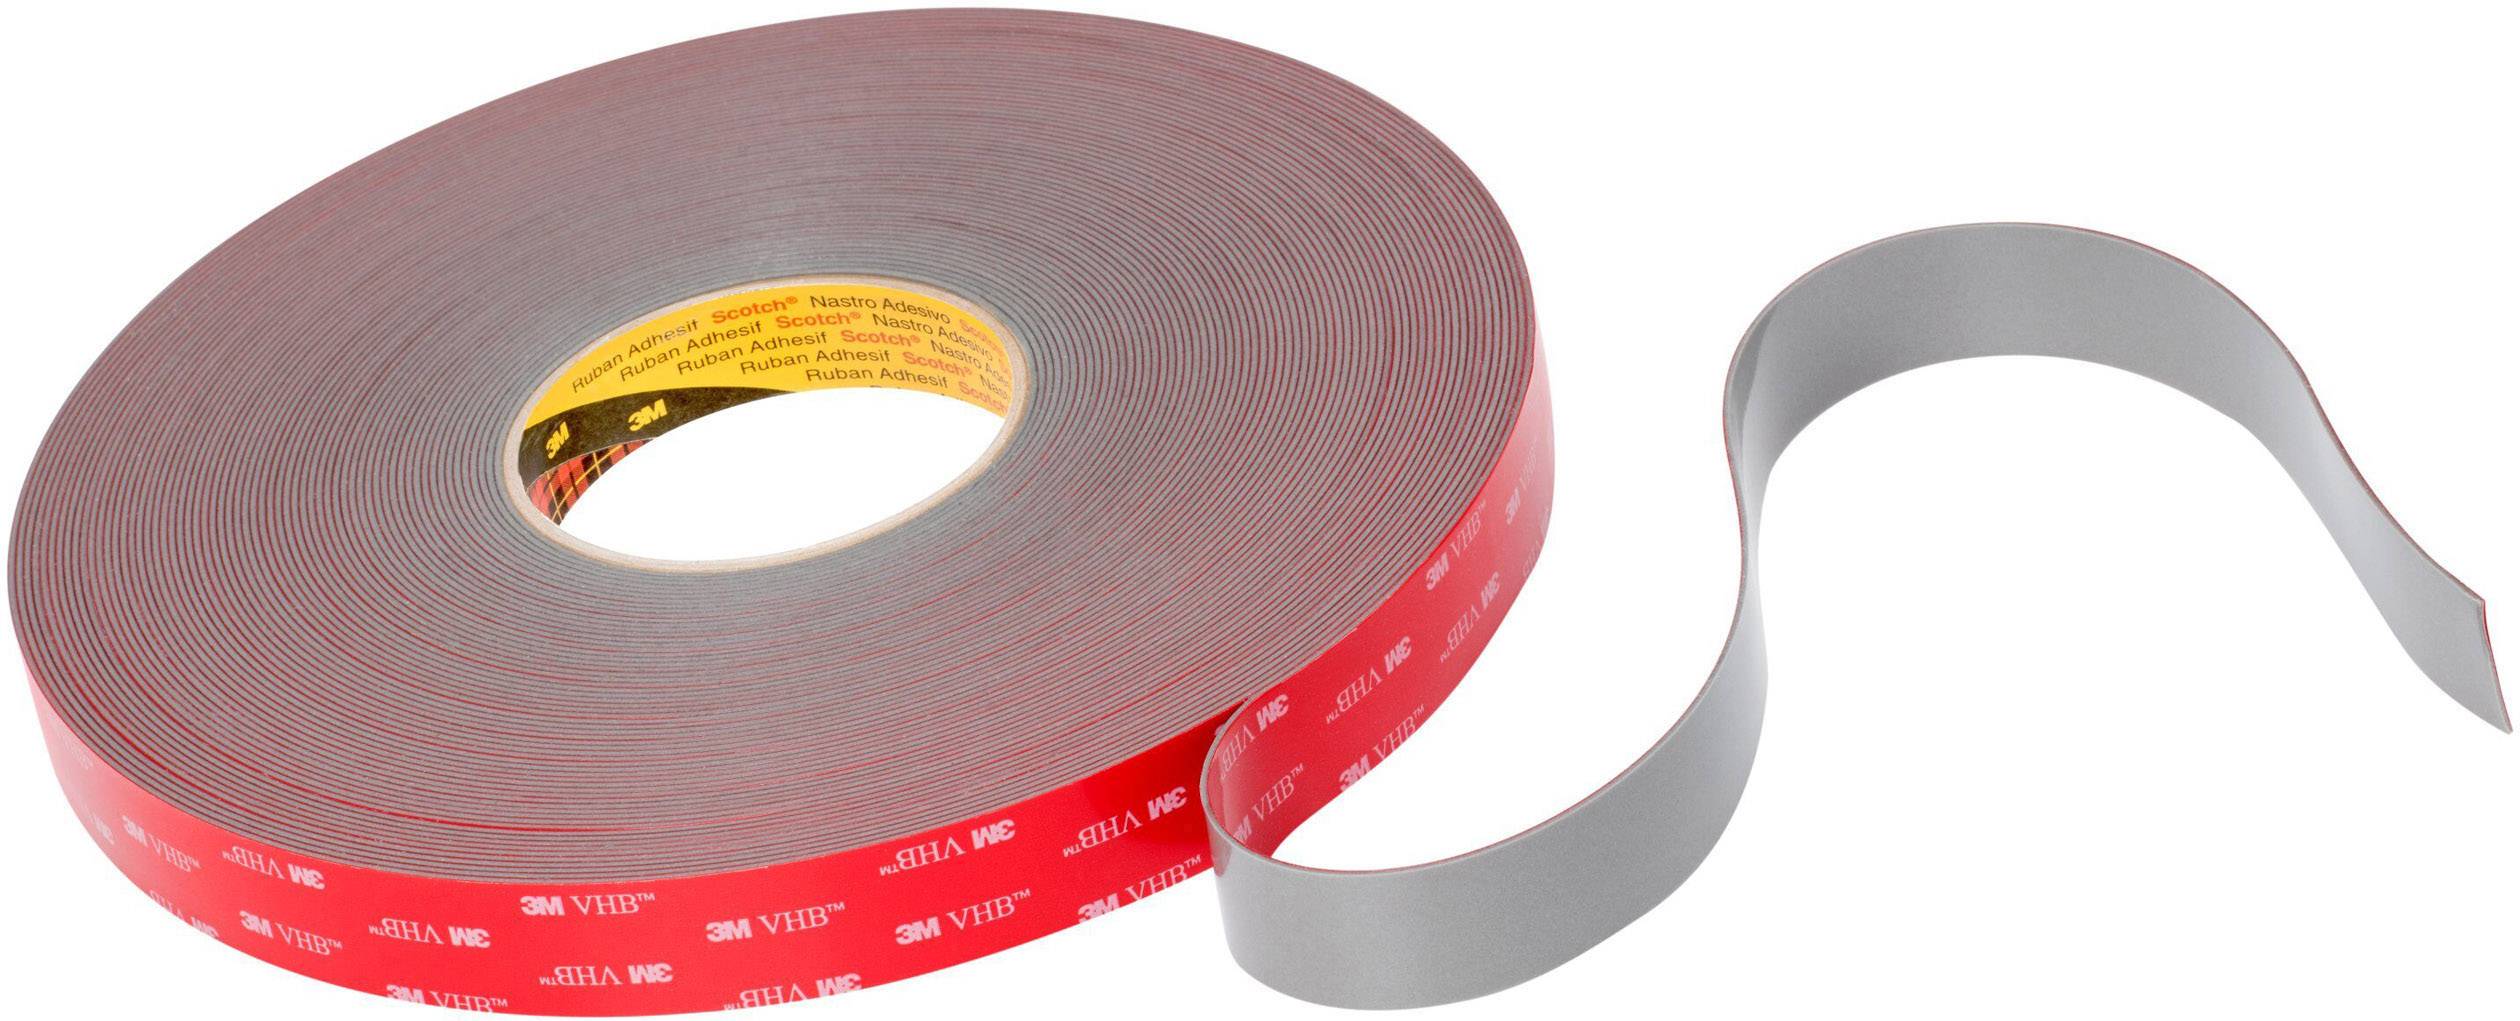 thick adhesive tape